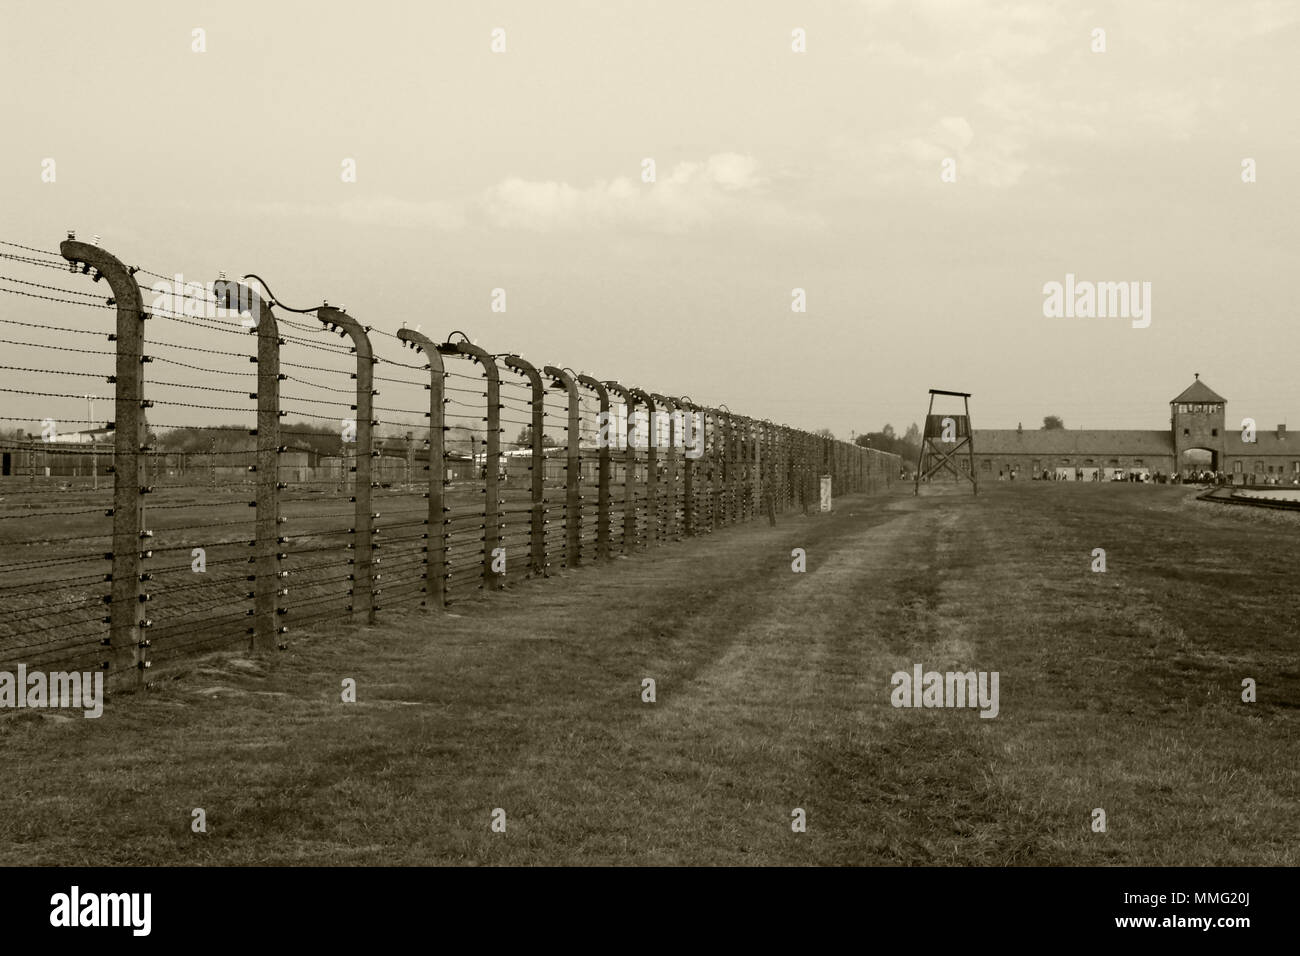 AUSCHWITZ, Polen, 12. Oktober 2013: Zaun und Wachturm im Konzentrationslager Auschwitz Birkenau KZ, Schwarz, Weiß und Beige duplex Verarbeitung Fotografie, Polen Stockfoto